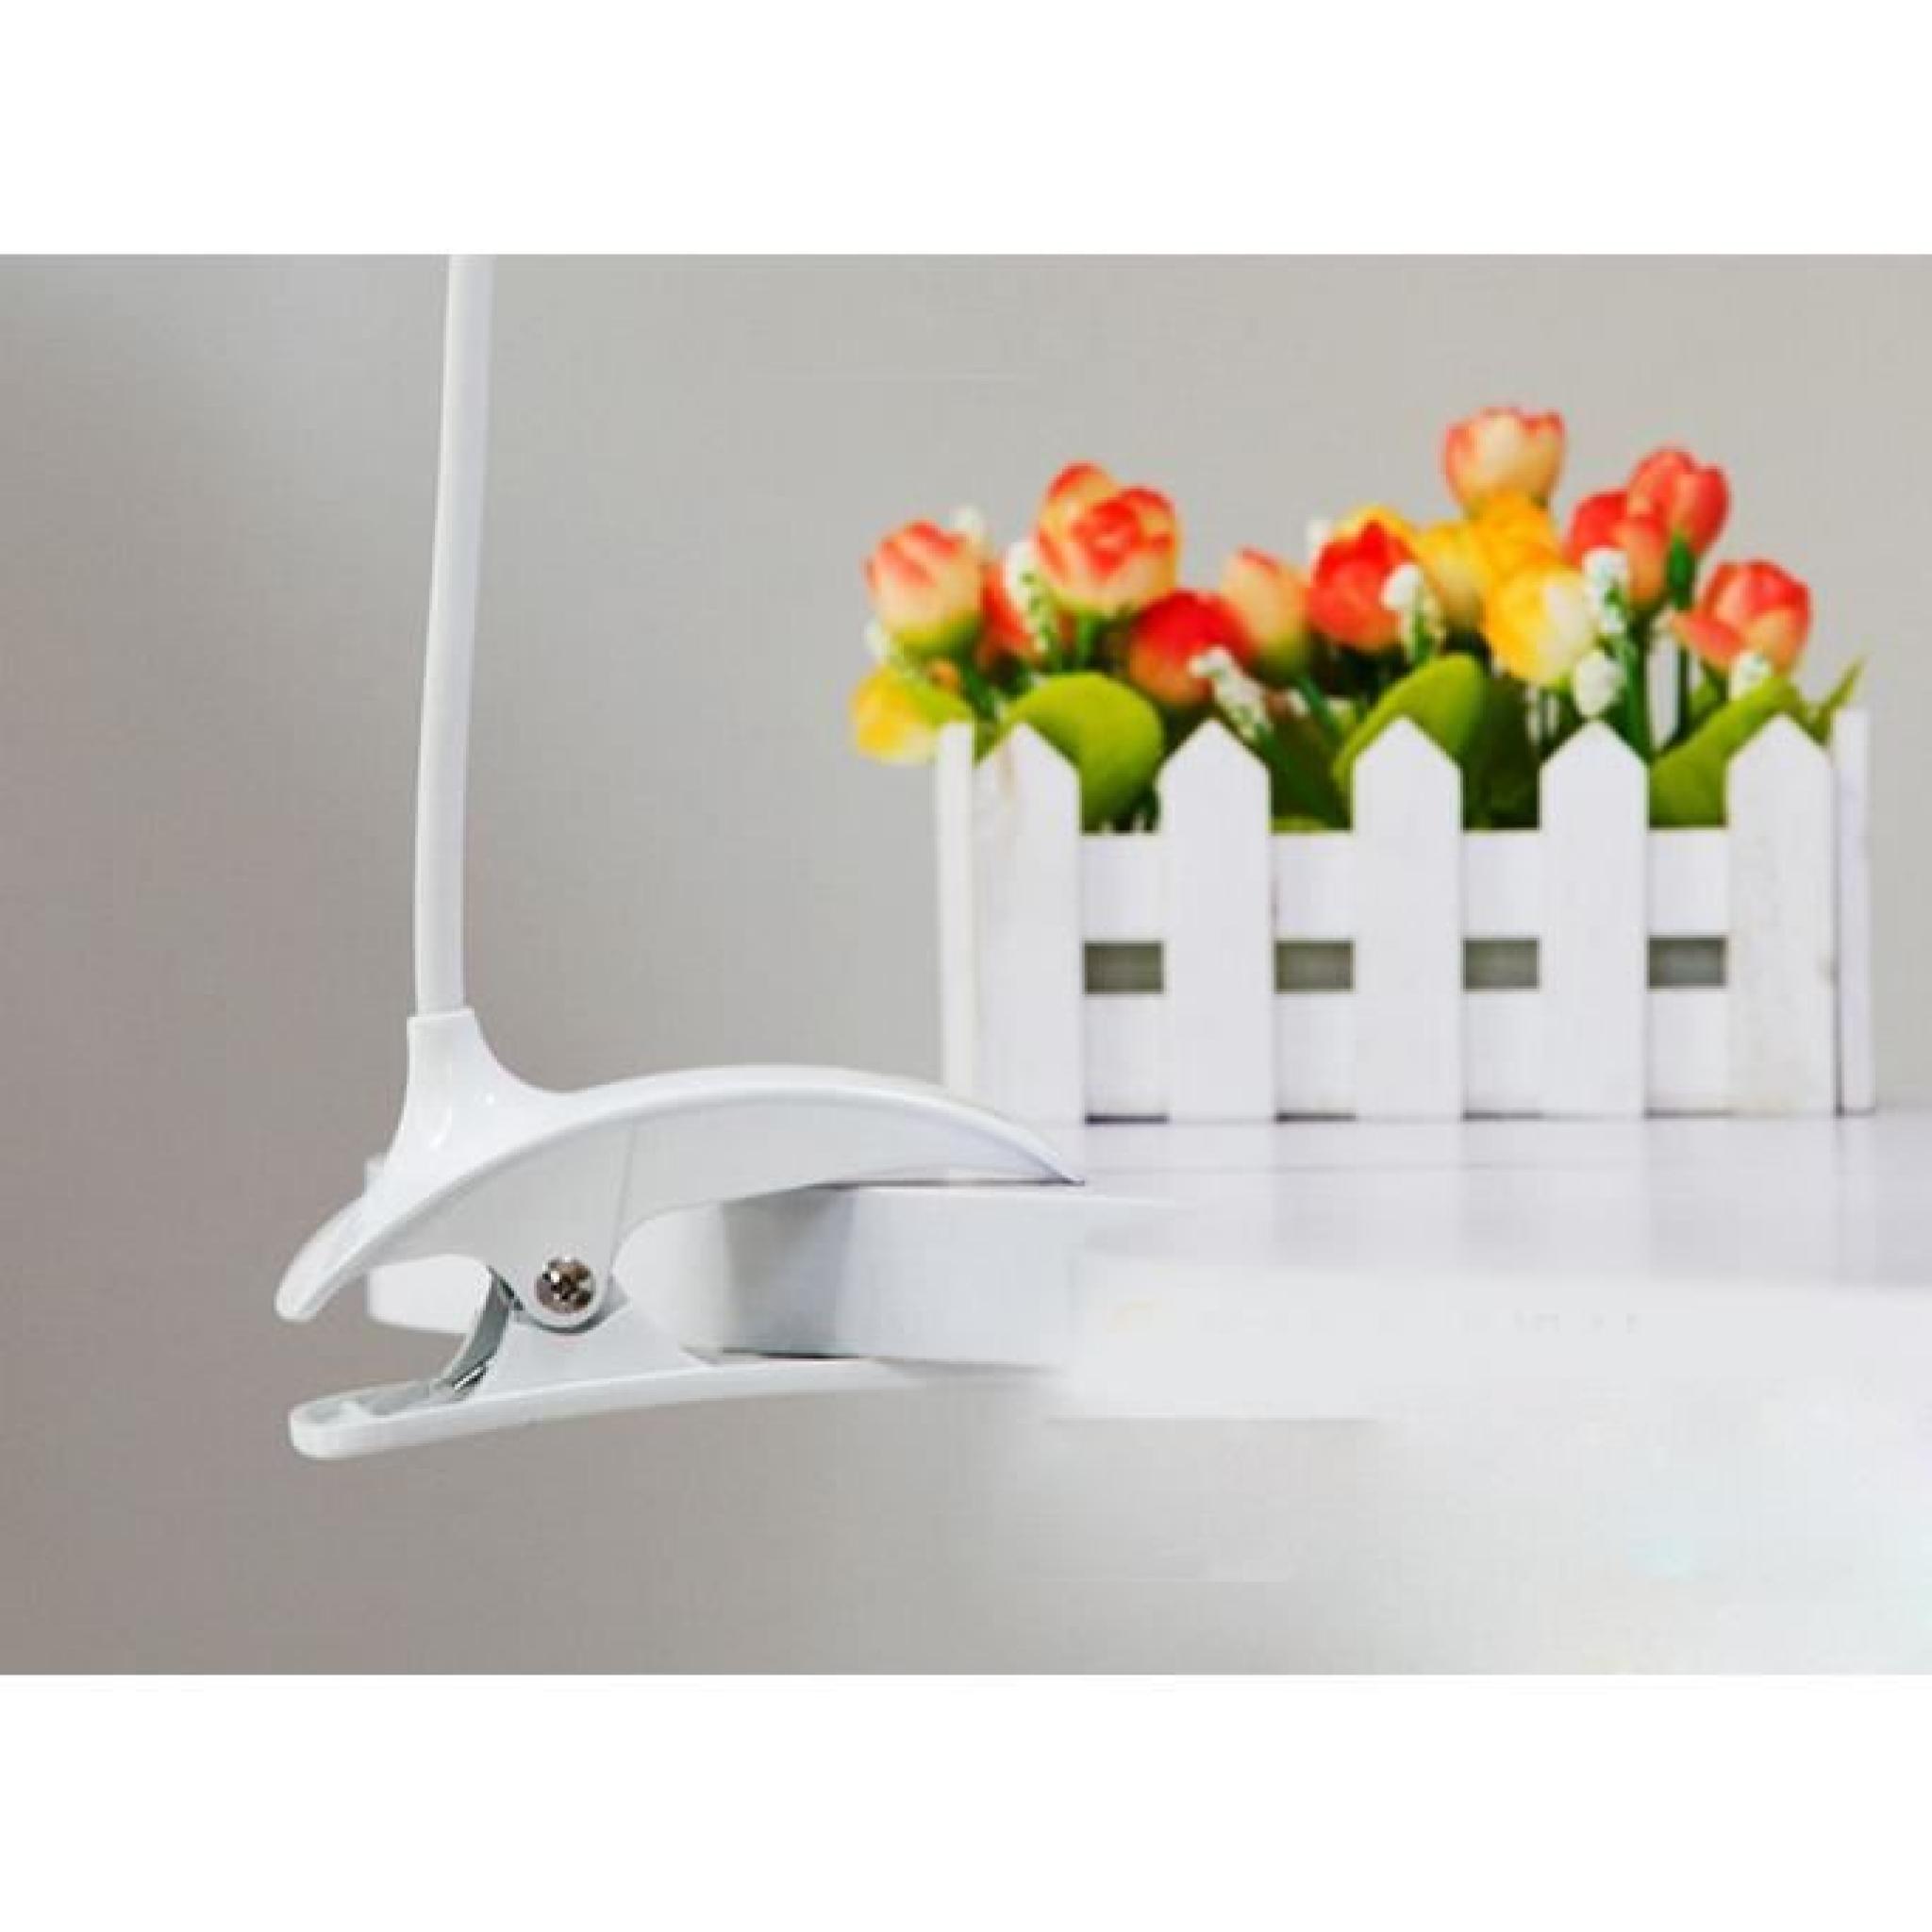 LED Flexible Light Reading Clip-on Table de lit Bureau d'étude de la lampe côté pas cher